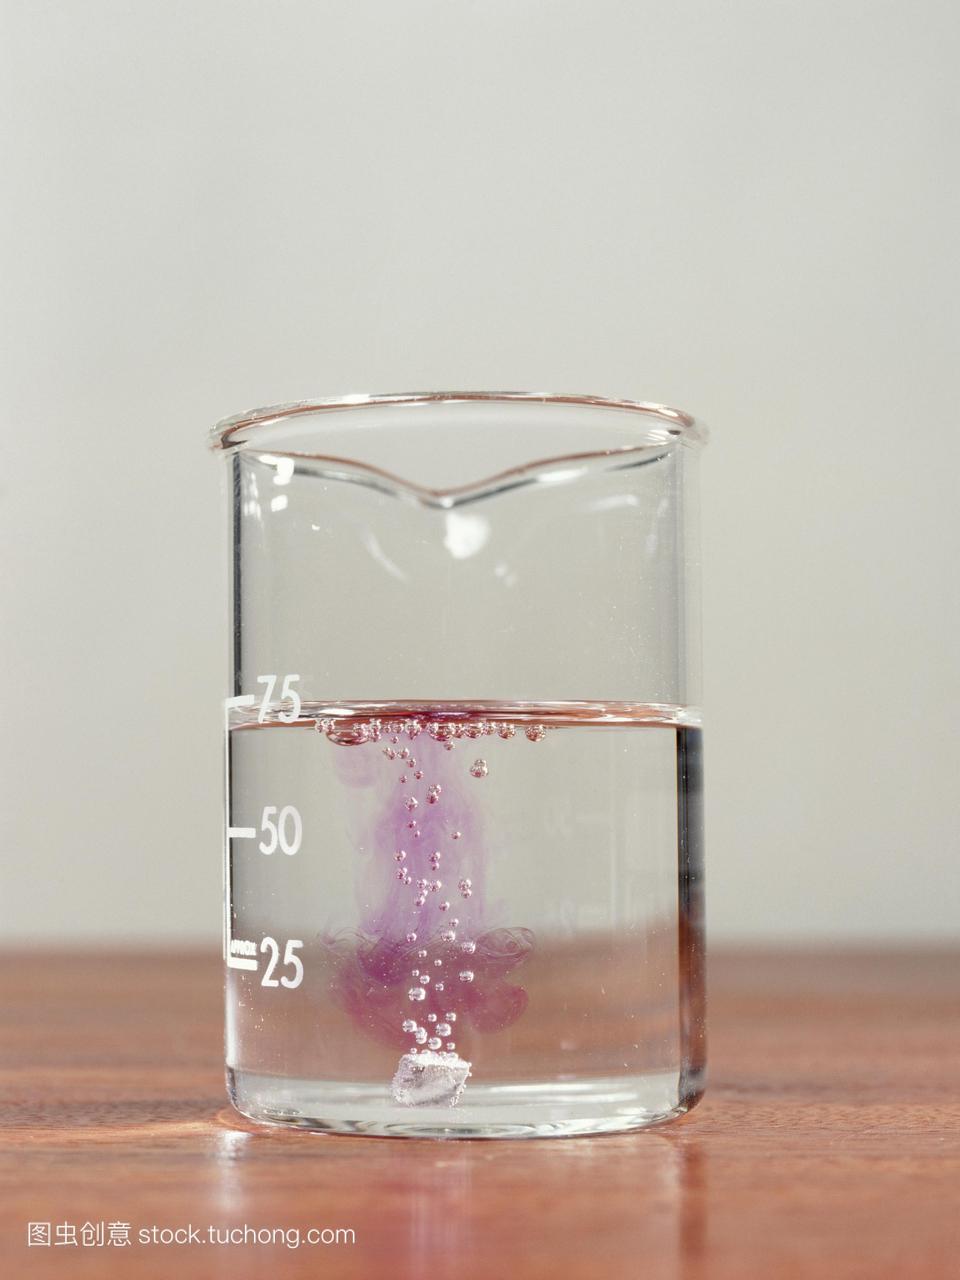 可以看到氢的气泡从一个乙醇的烧杯里的钠金属碎片中升起